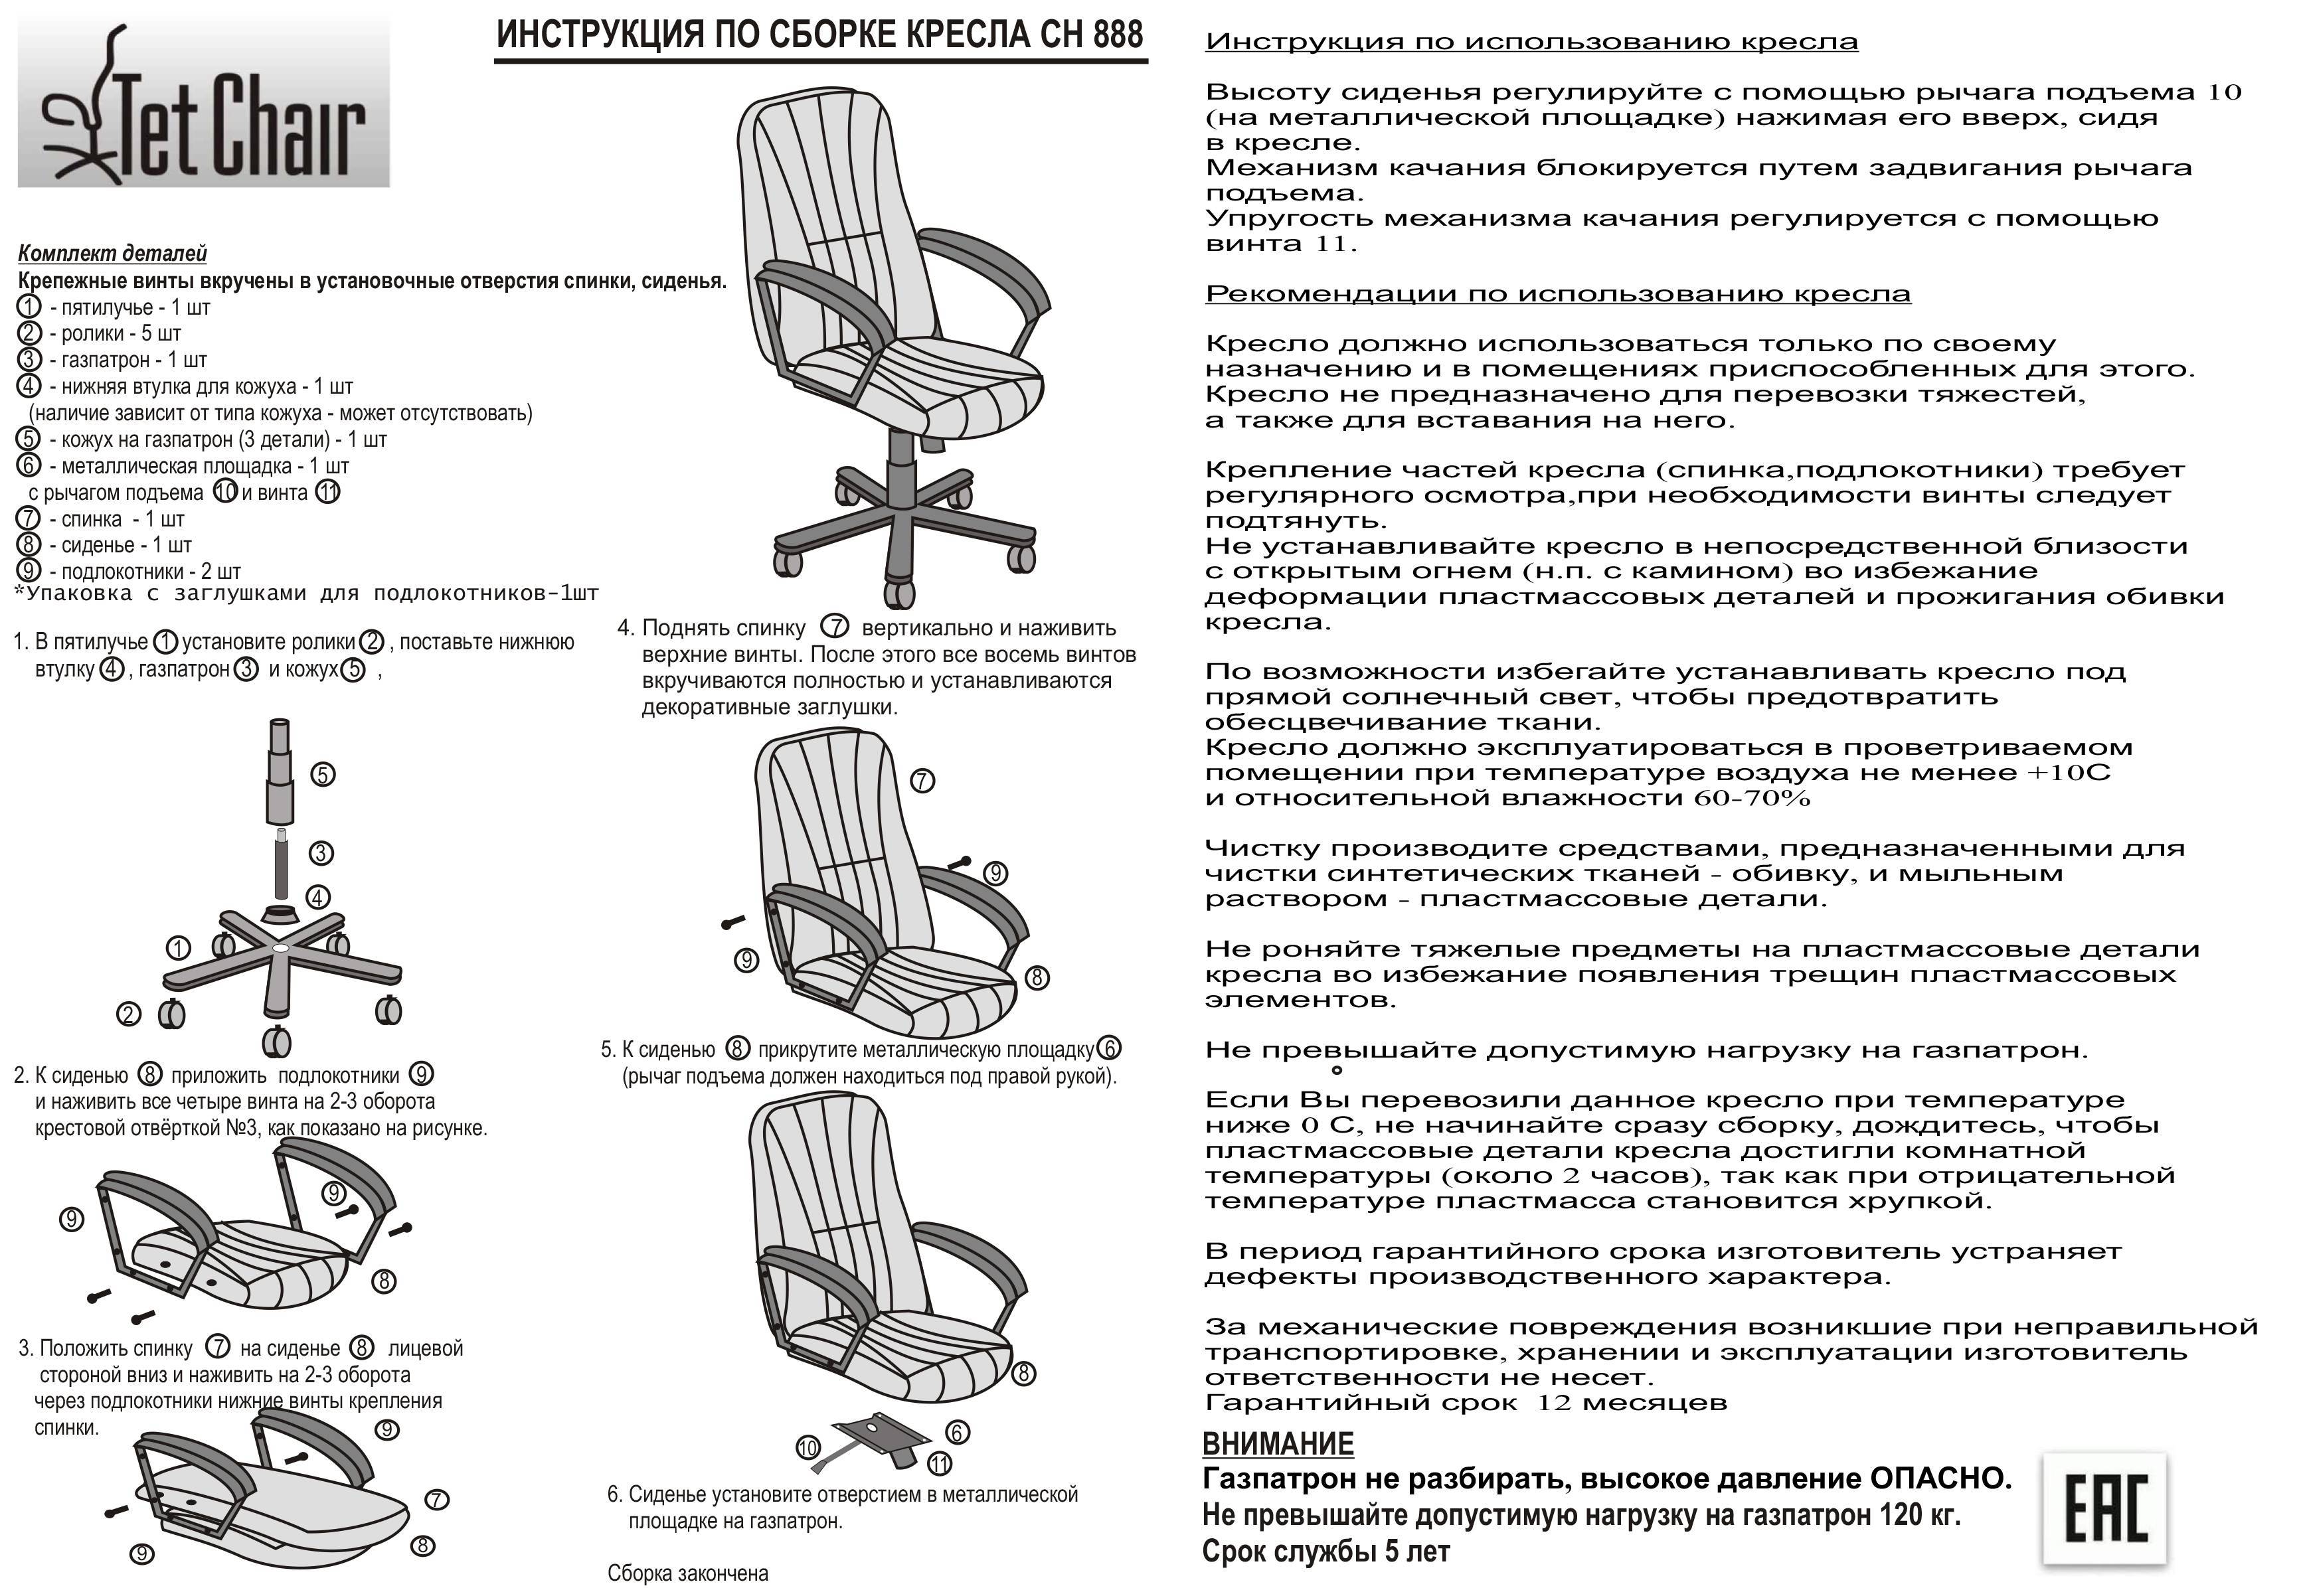 Как самостоятельно собрать компьютерное кресло: инструкция
как самостоятельно собрать компьютерное кресло: инструкция